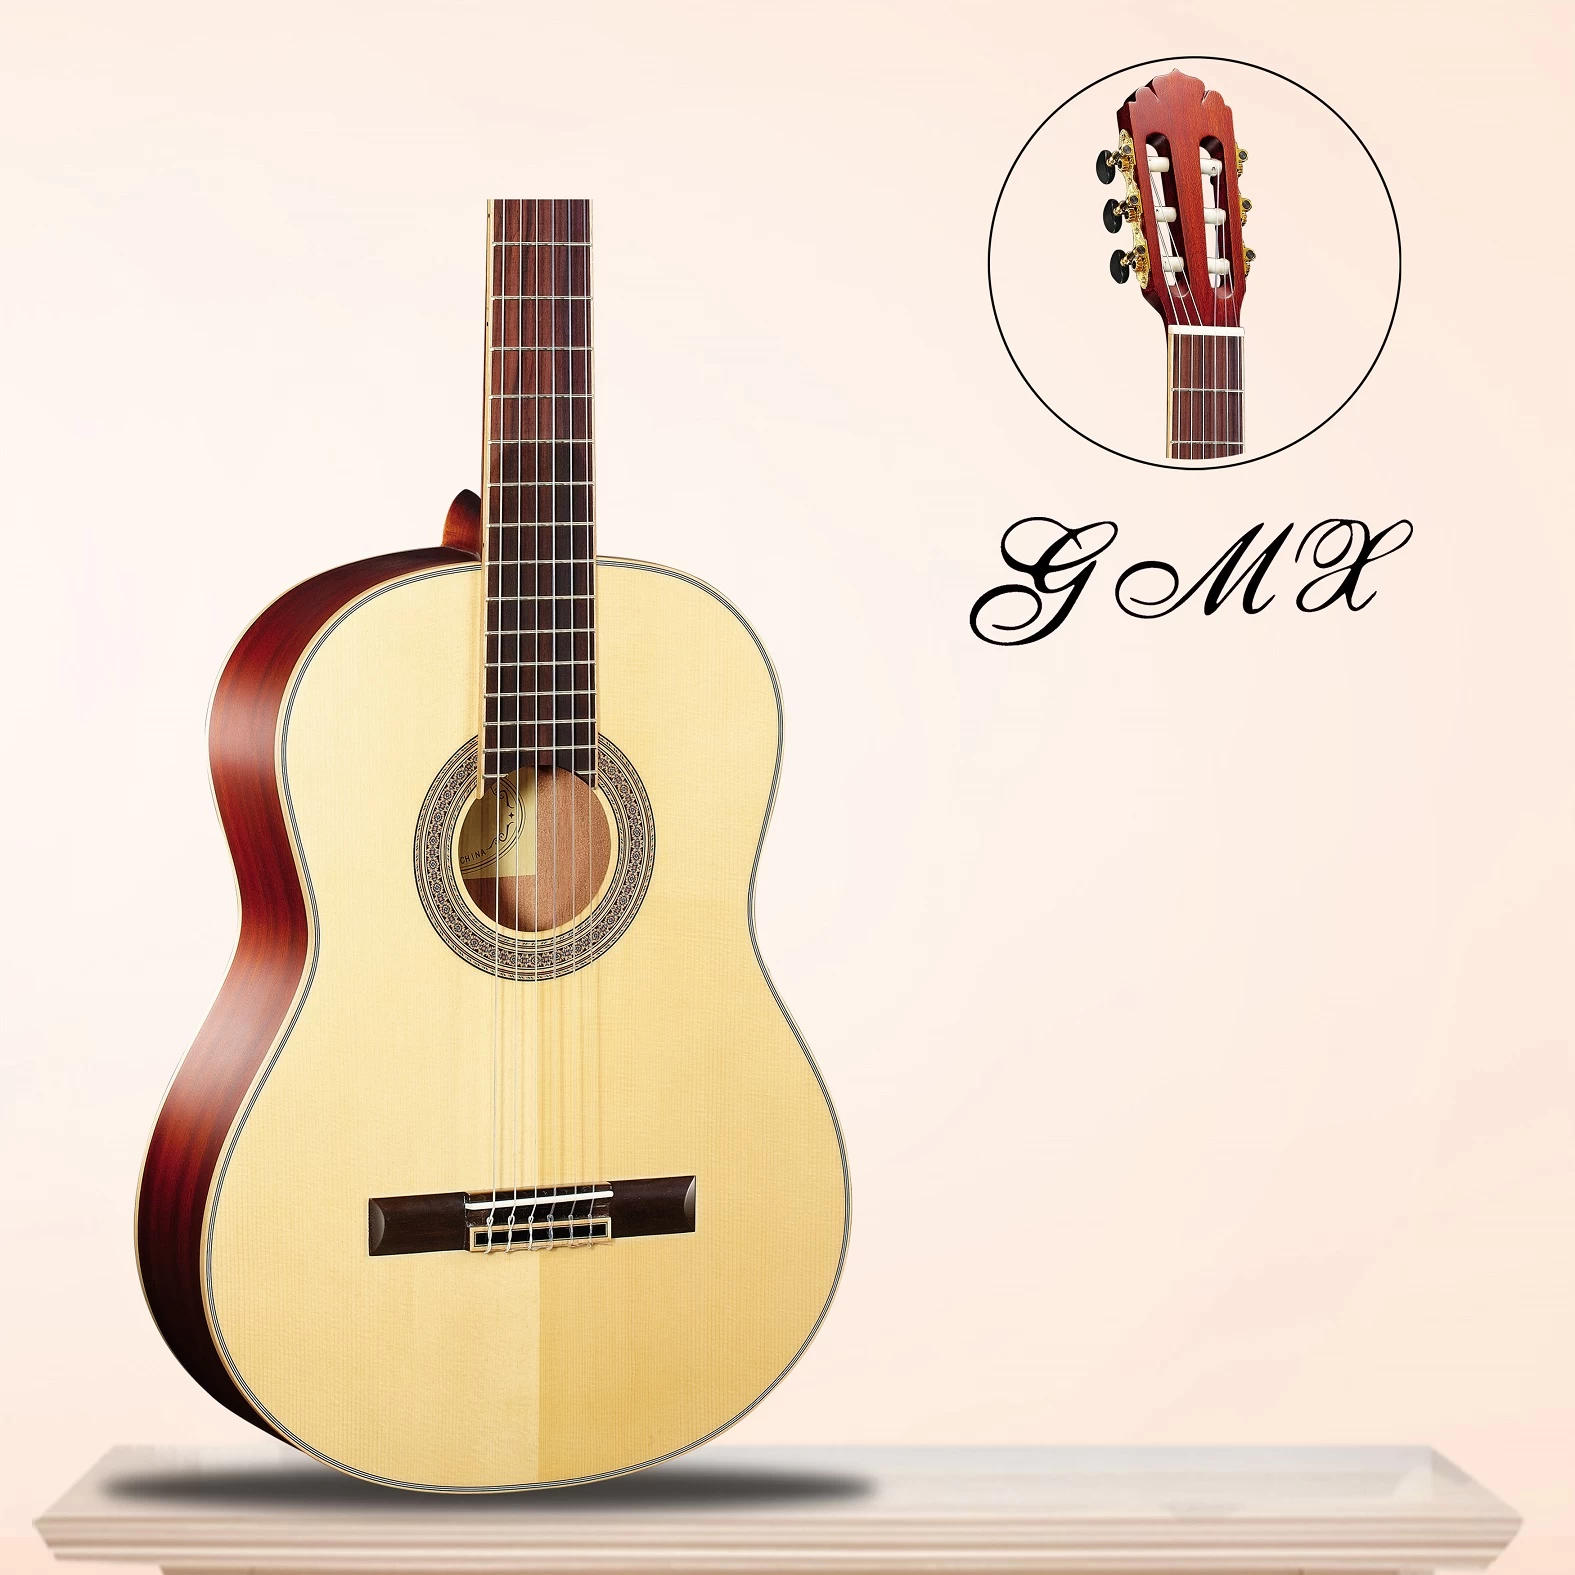 Hochwertige klassische Gitarre aus China GMX13738